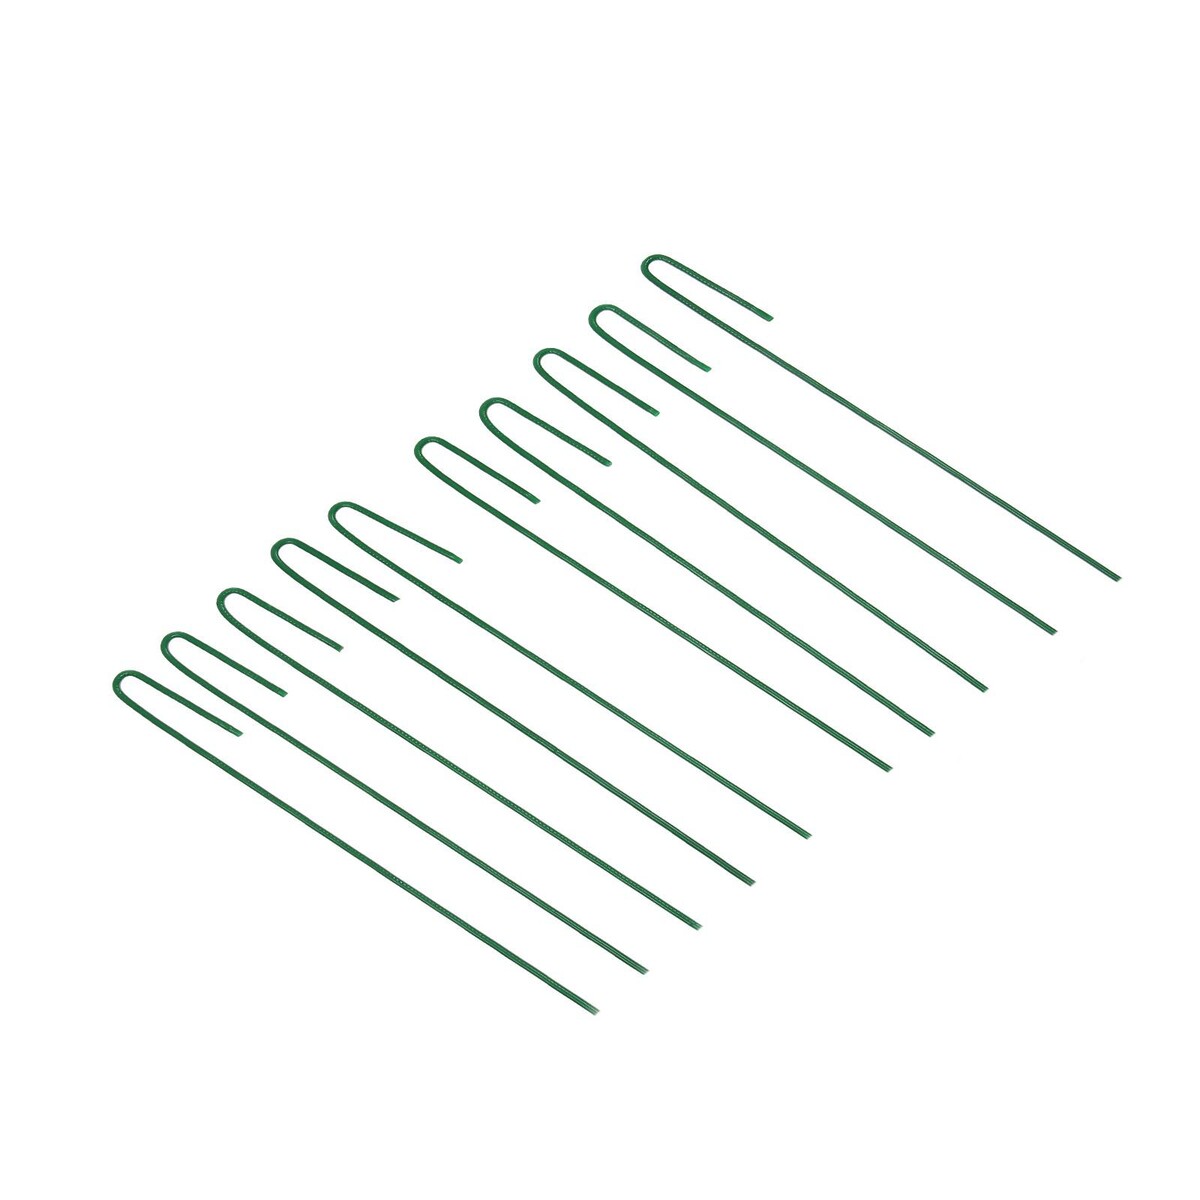 Колышек универсальный, h = 30 см, ножка d = 0.3 см, набор 10 шт., зеленый, greengo